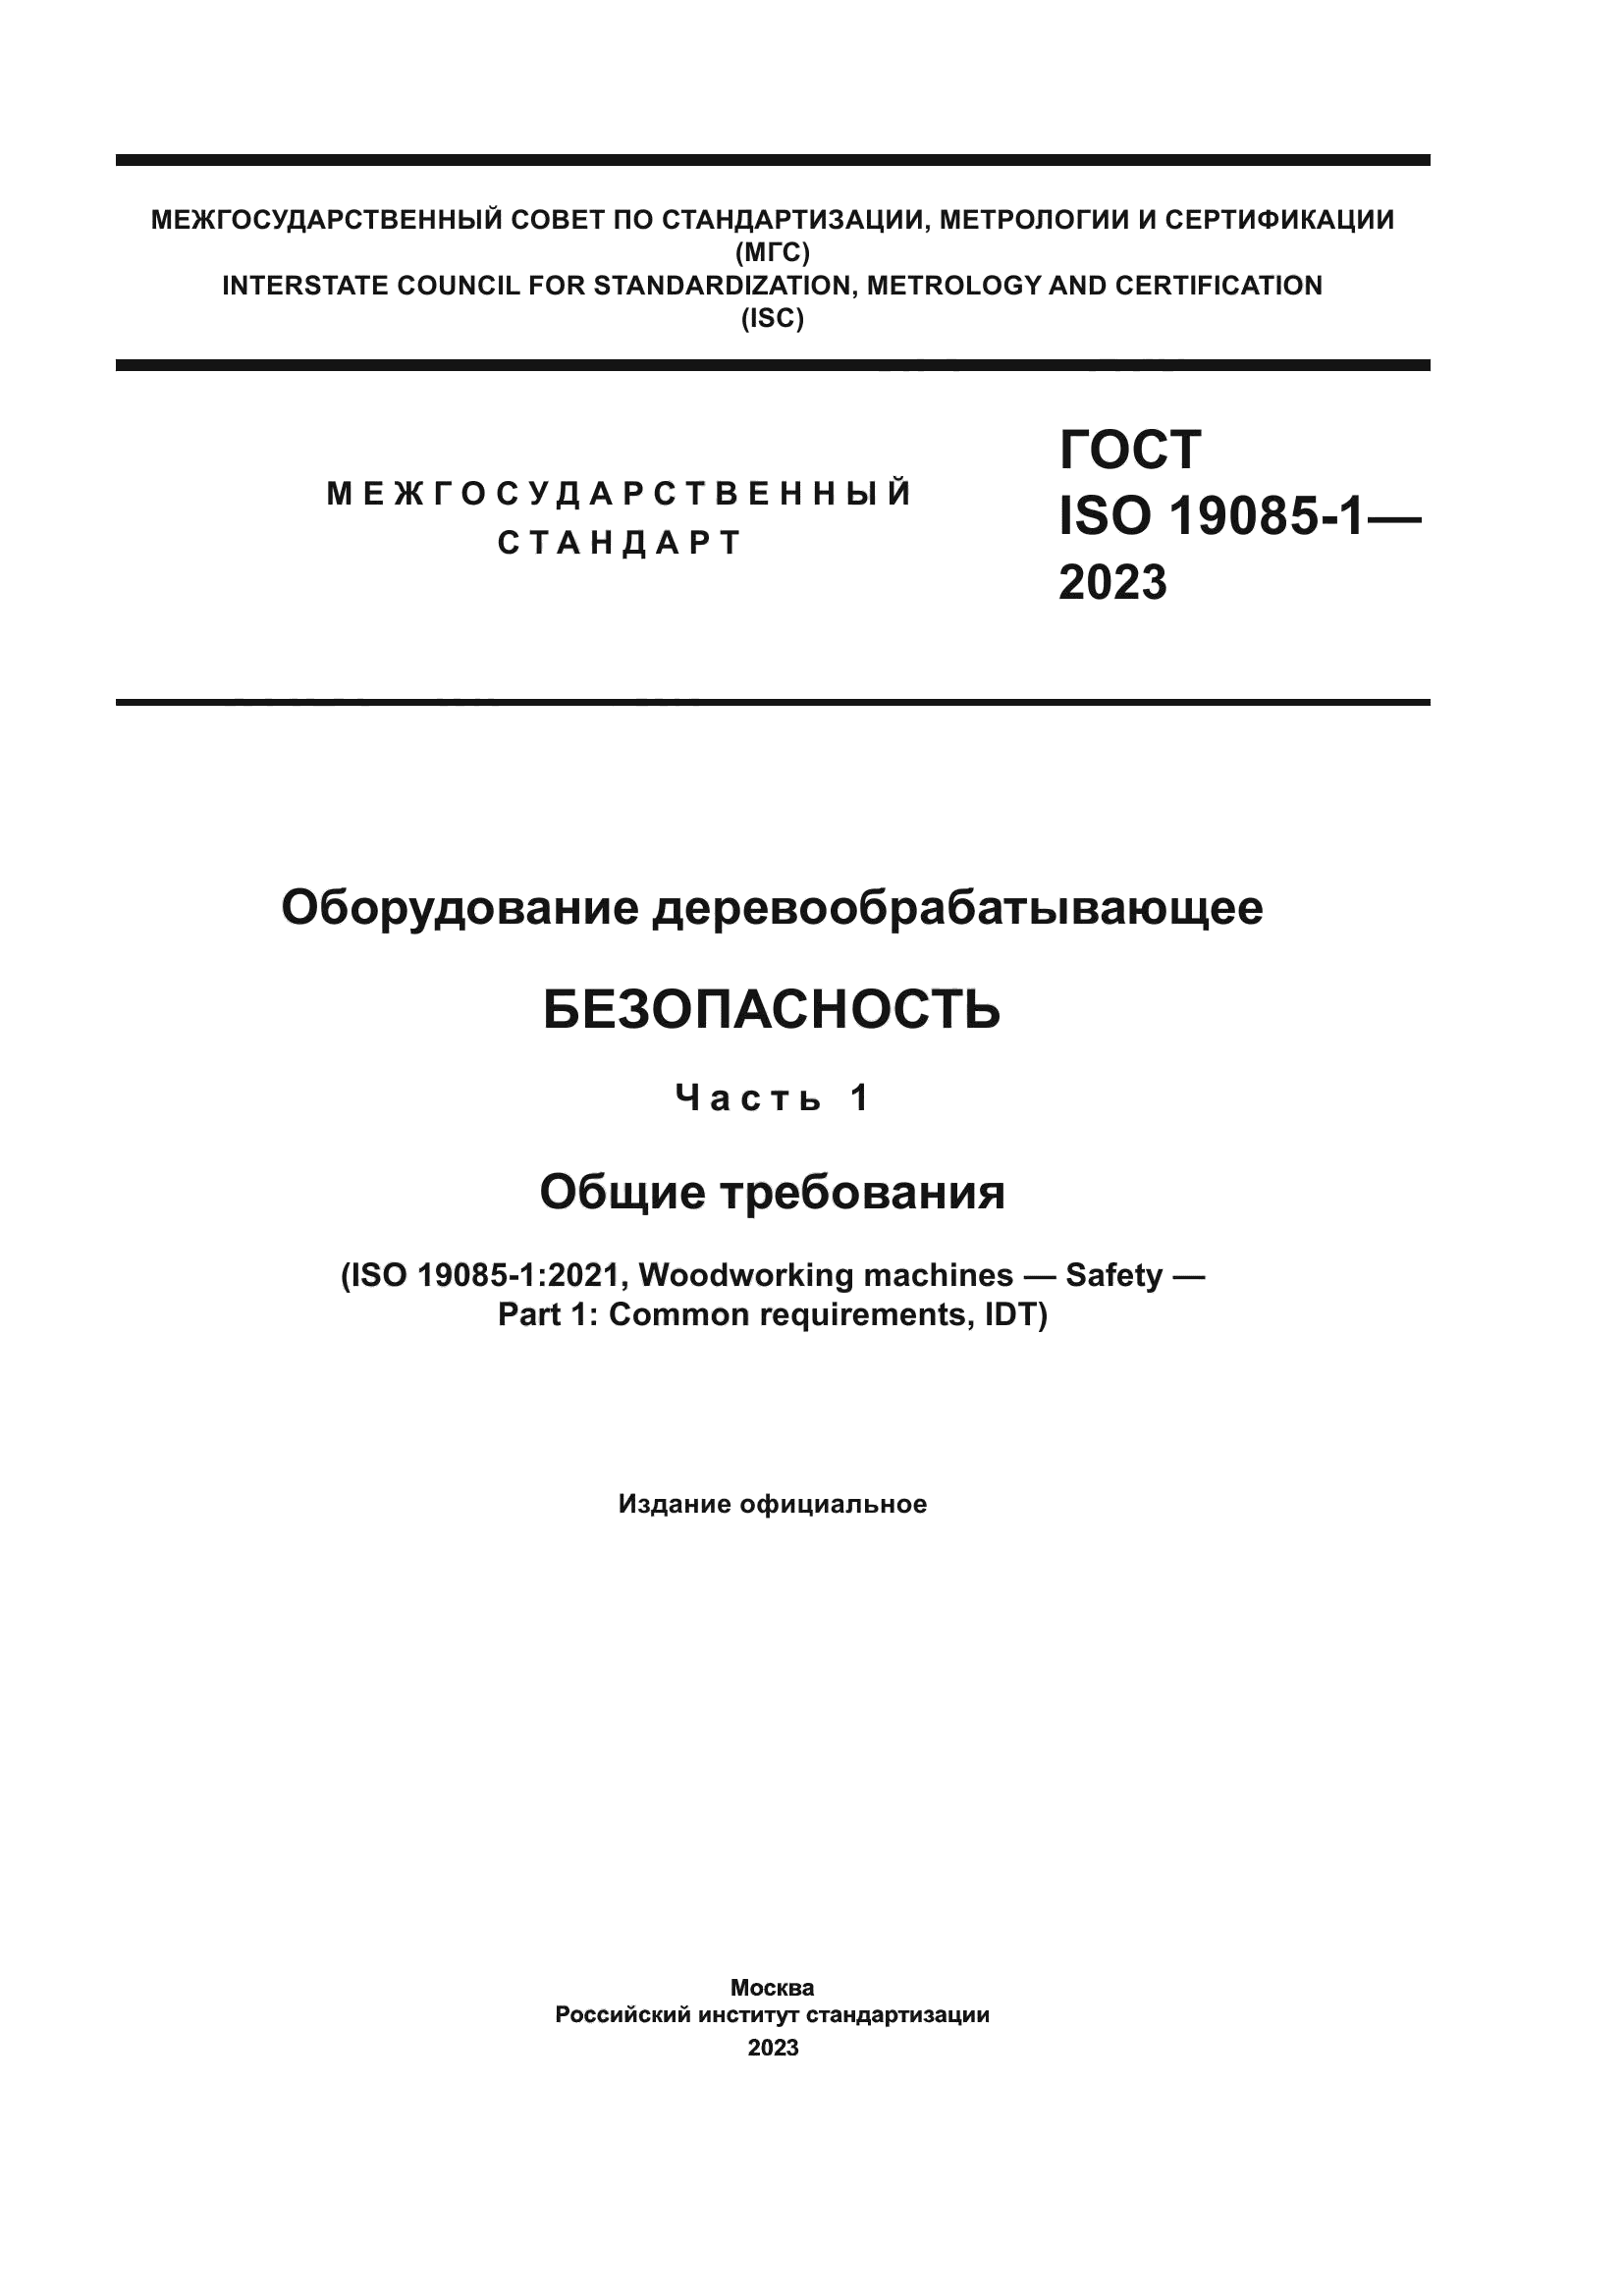 ГОСТ ISO 19085-1-2023